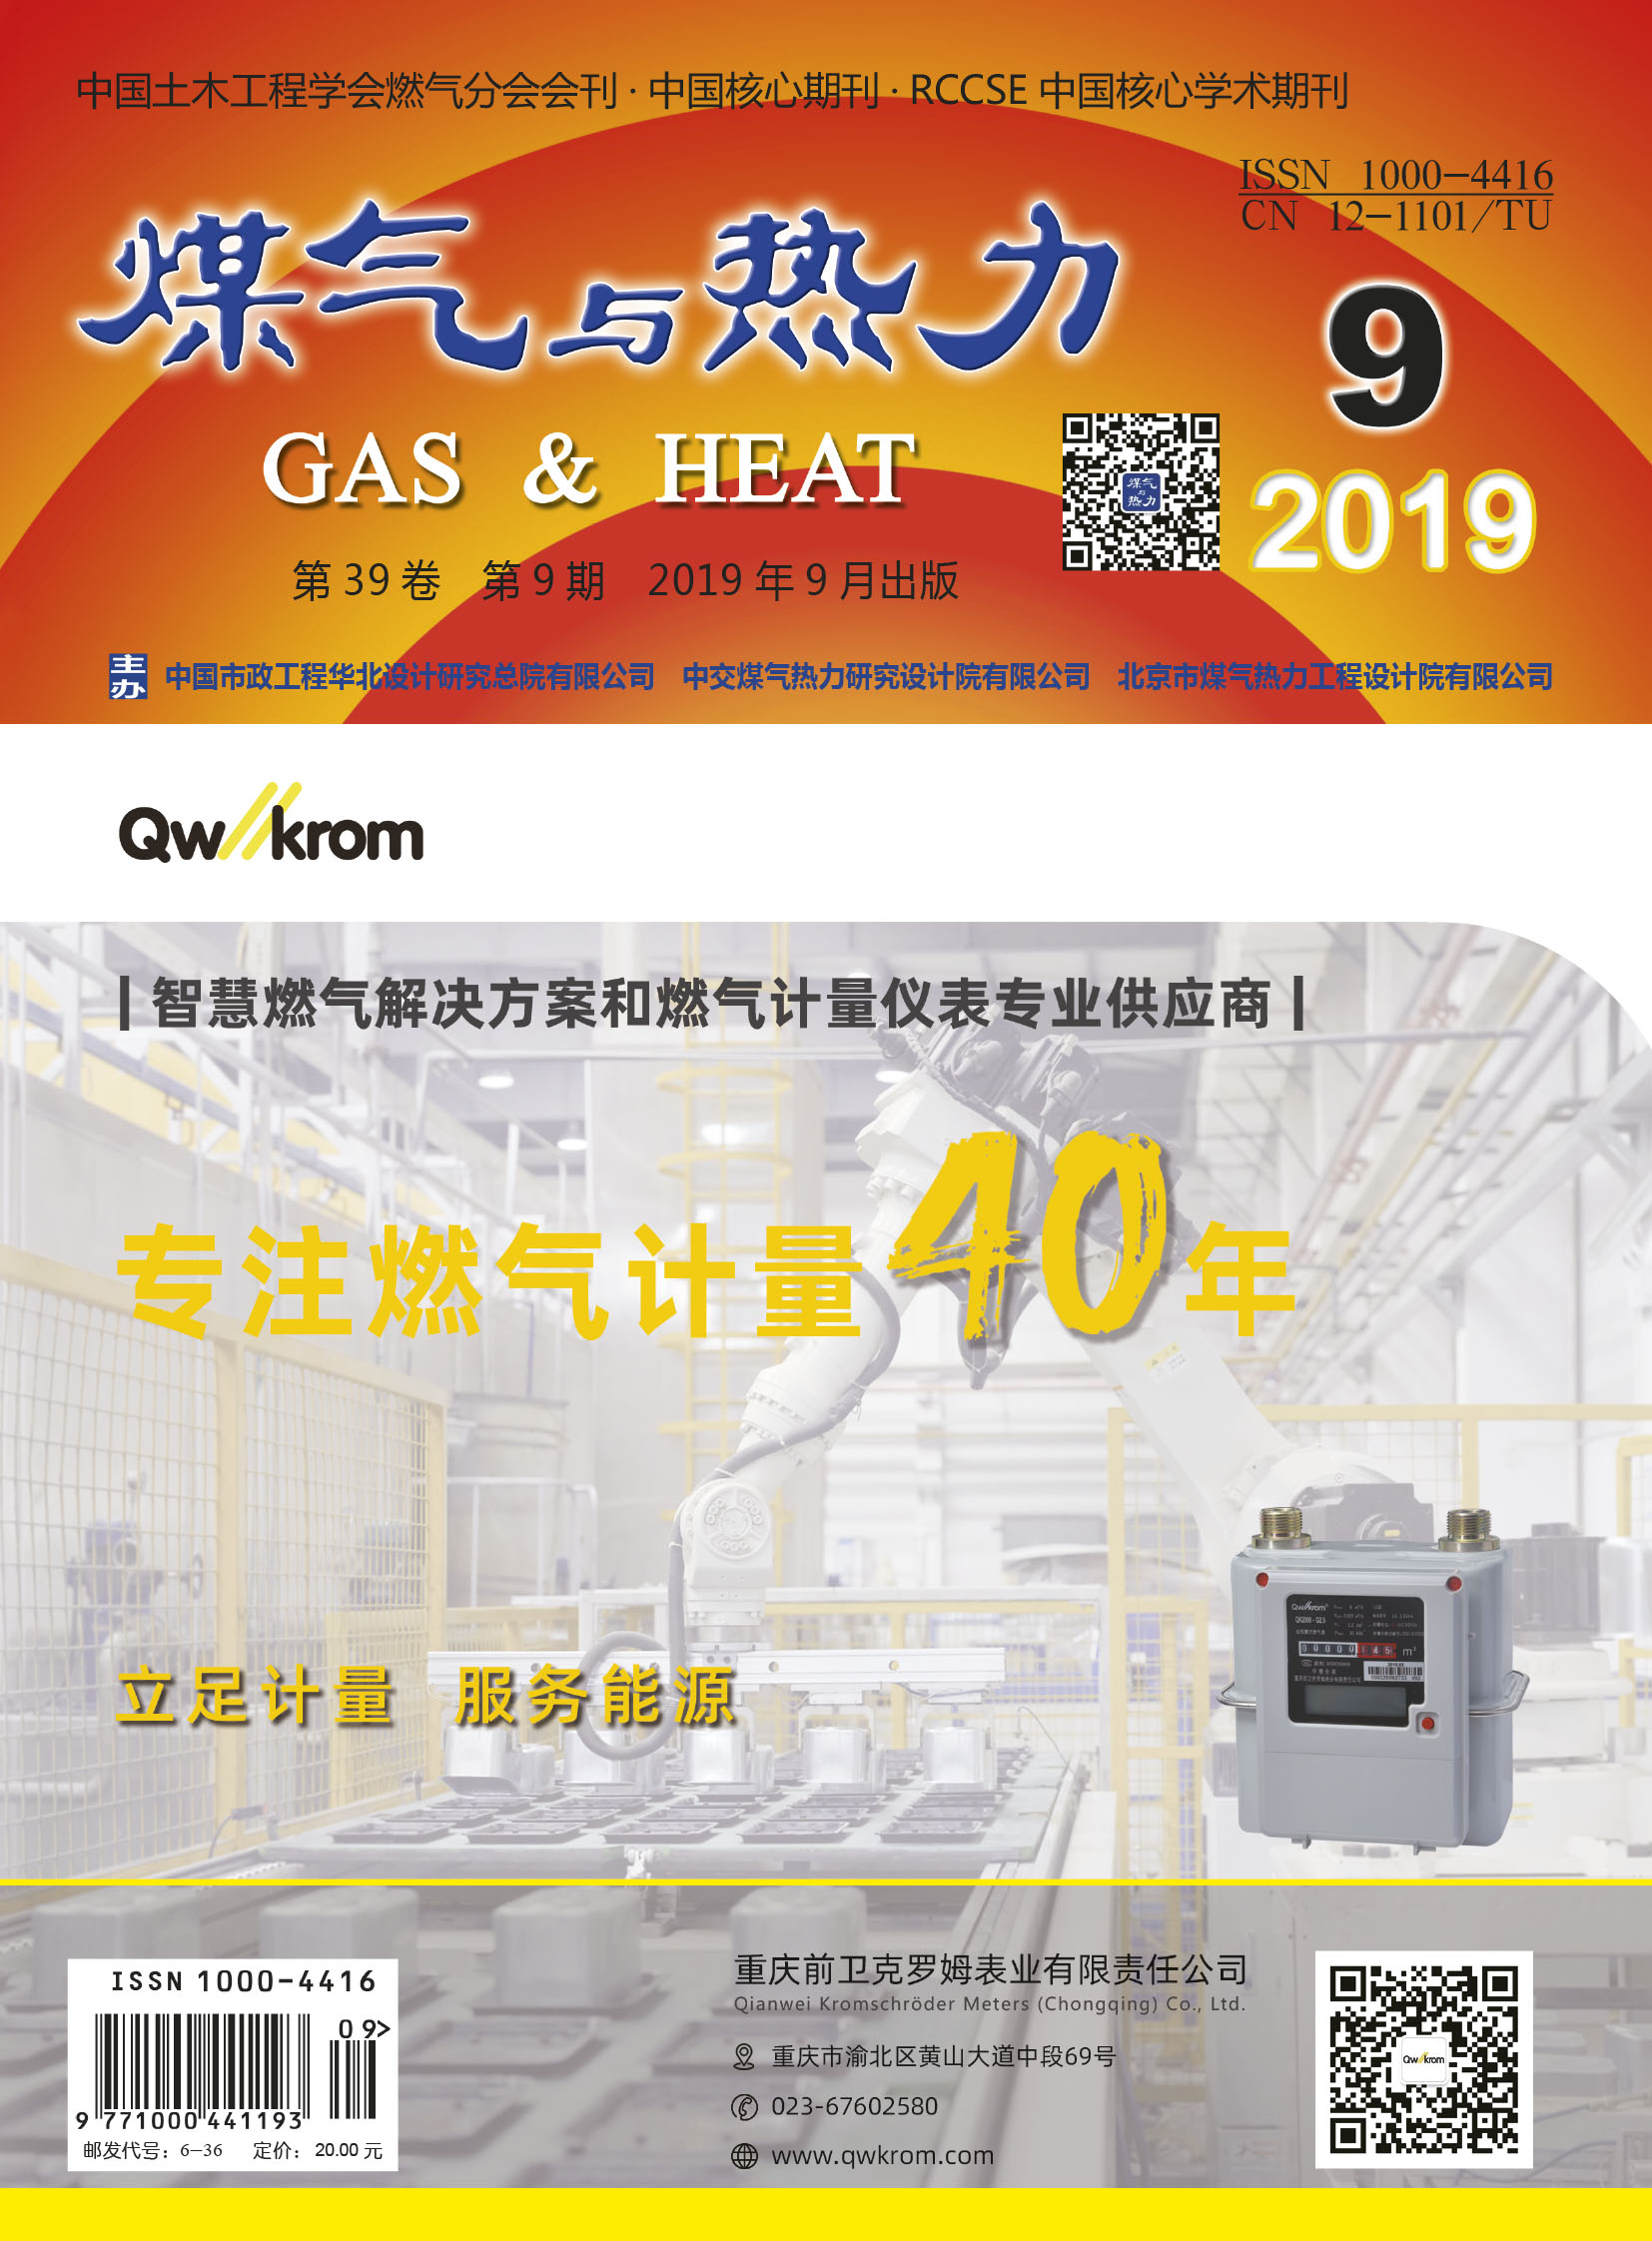 《煤气与热力》2019年9月刊